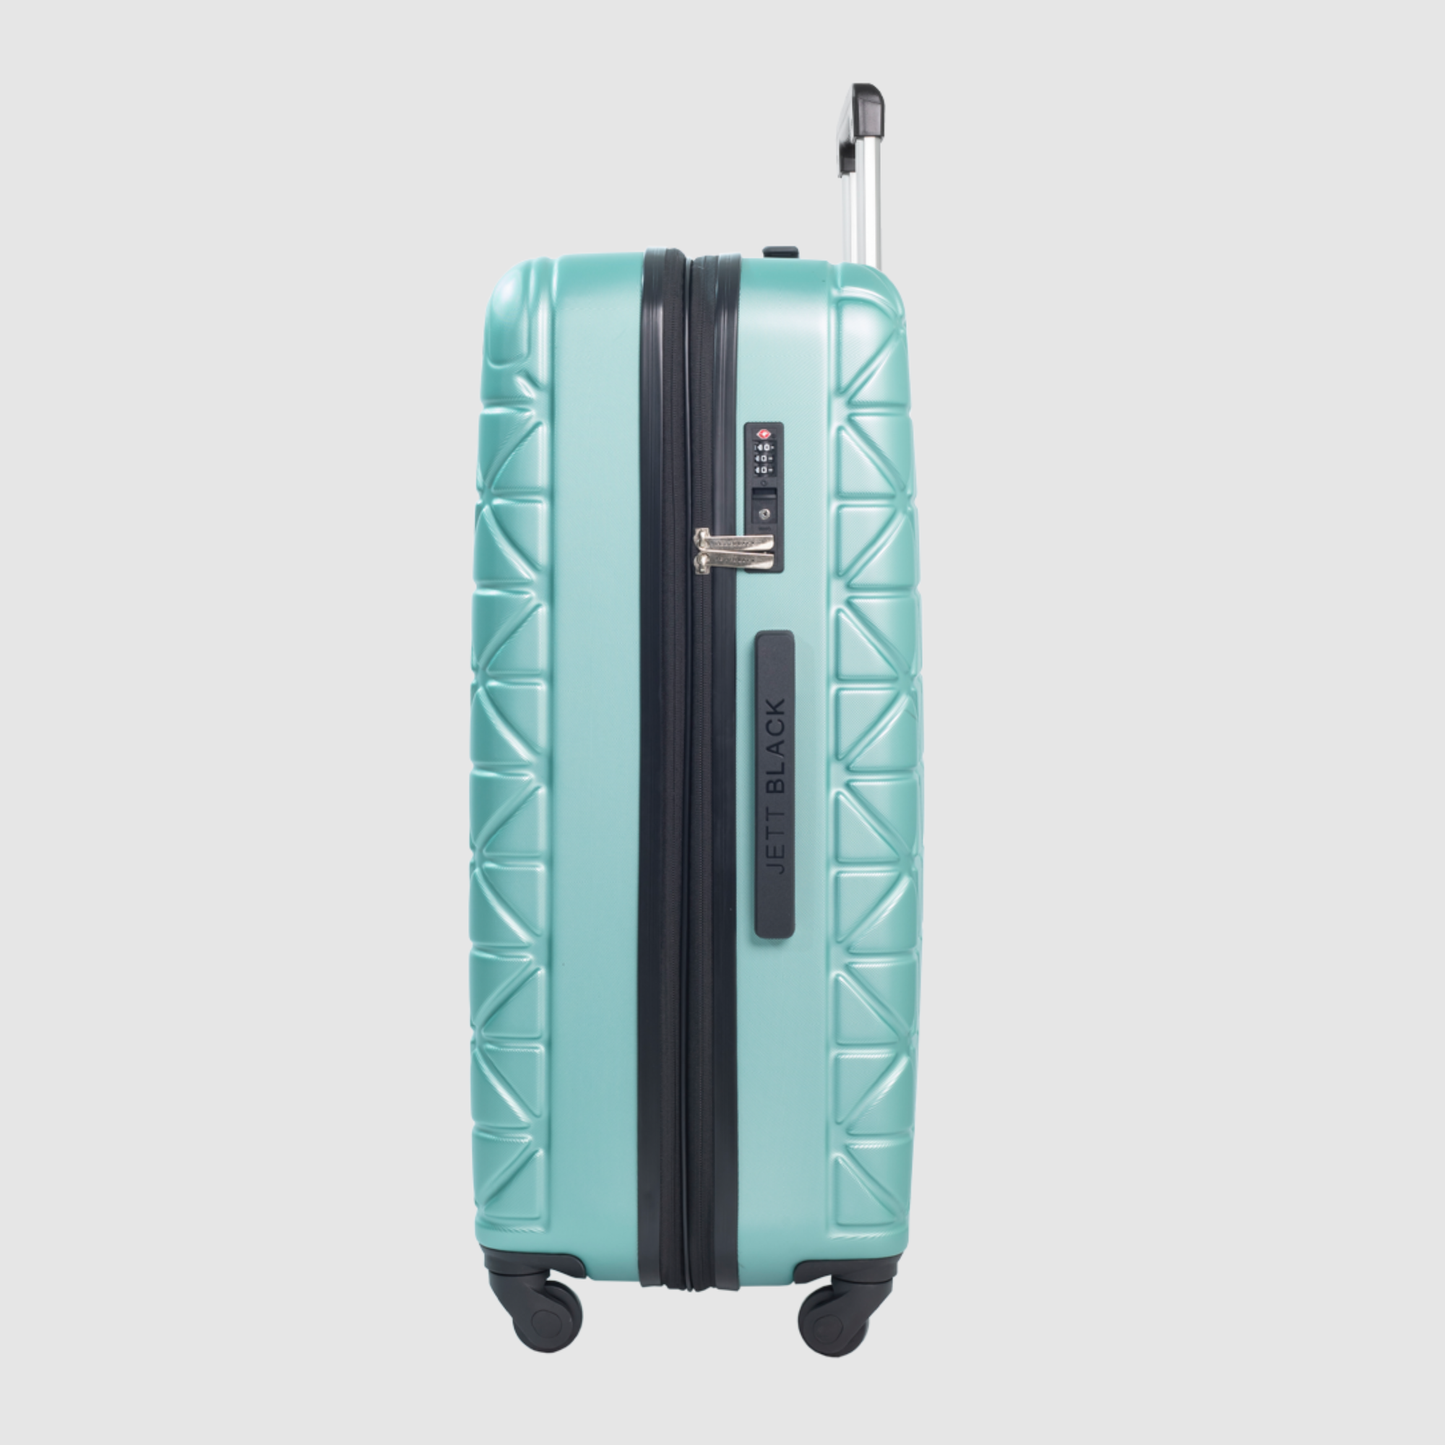 Sage Green Paragon Medium Suitcase